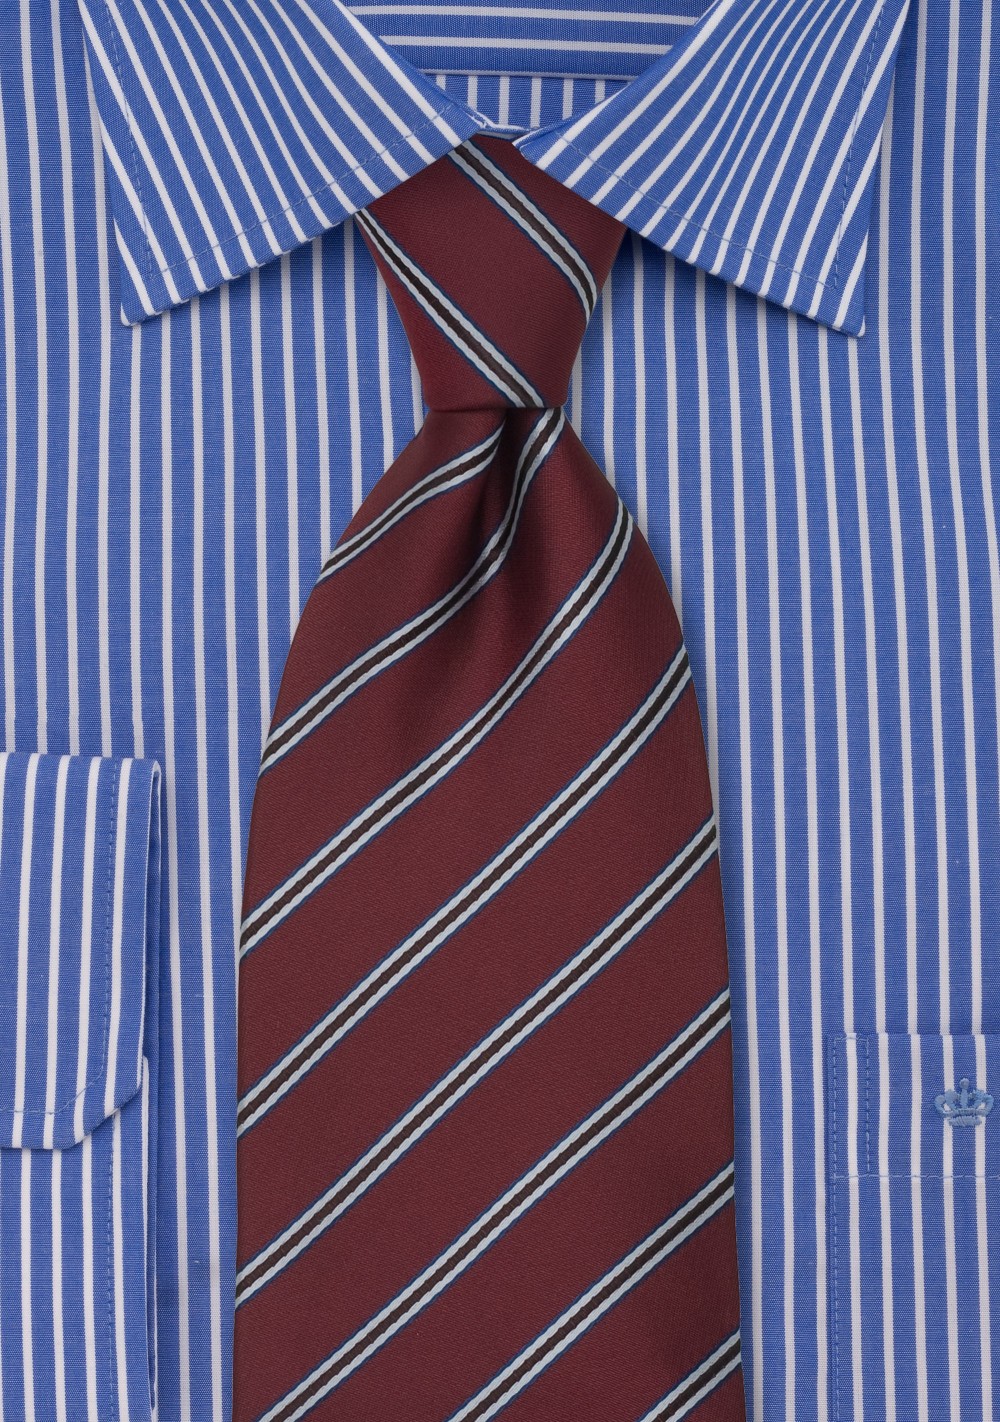 Maroon Neckties - Maroon Color Striped Tie